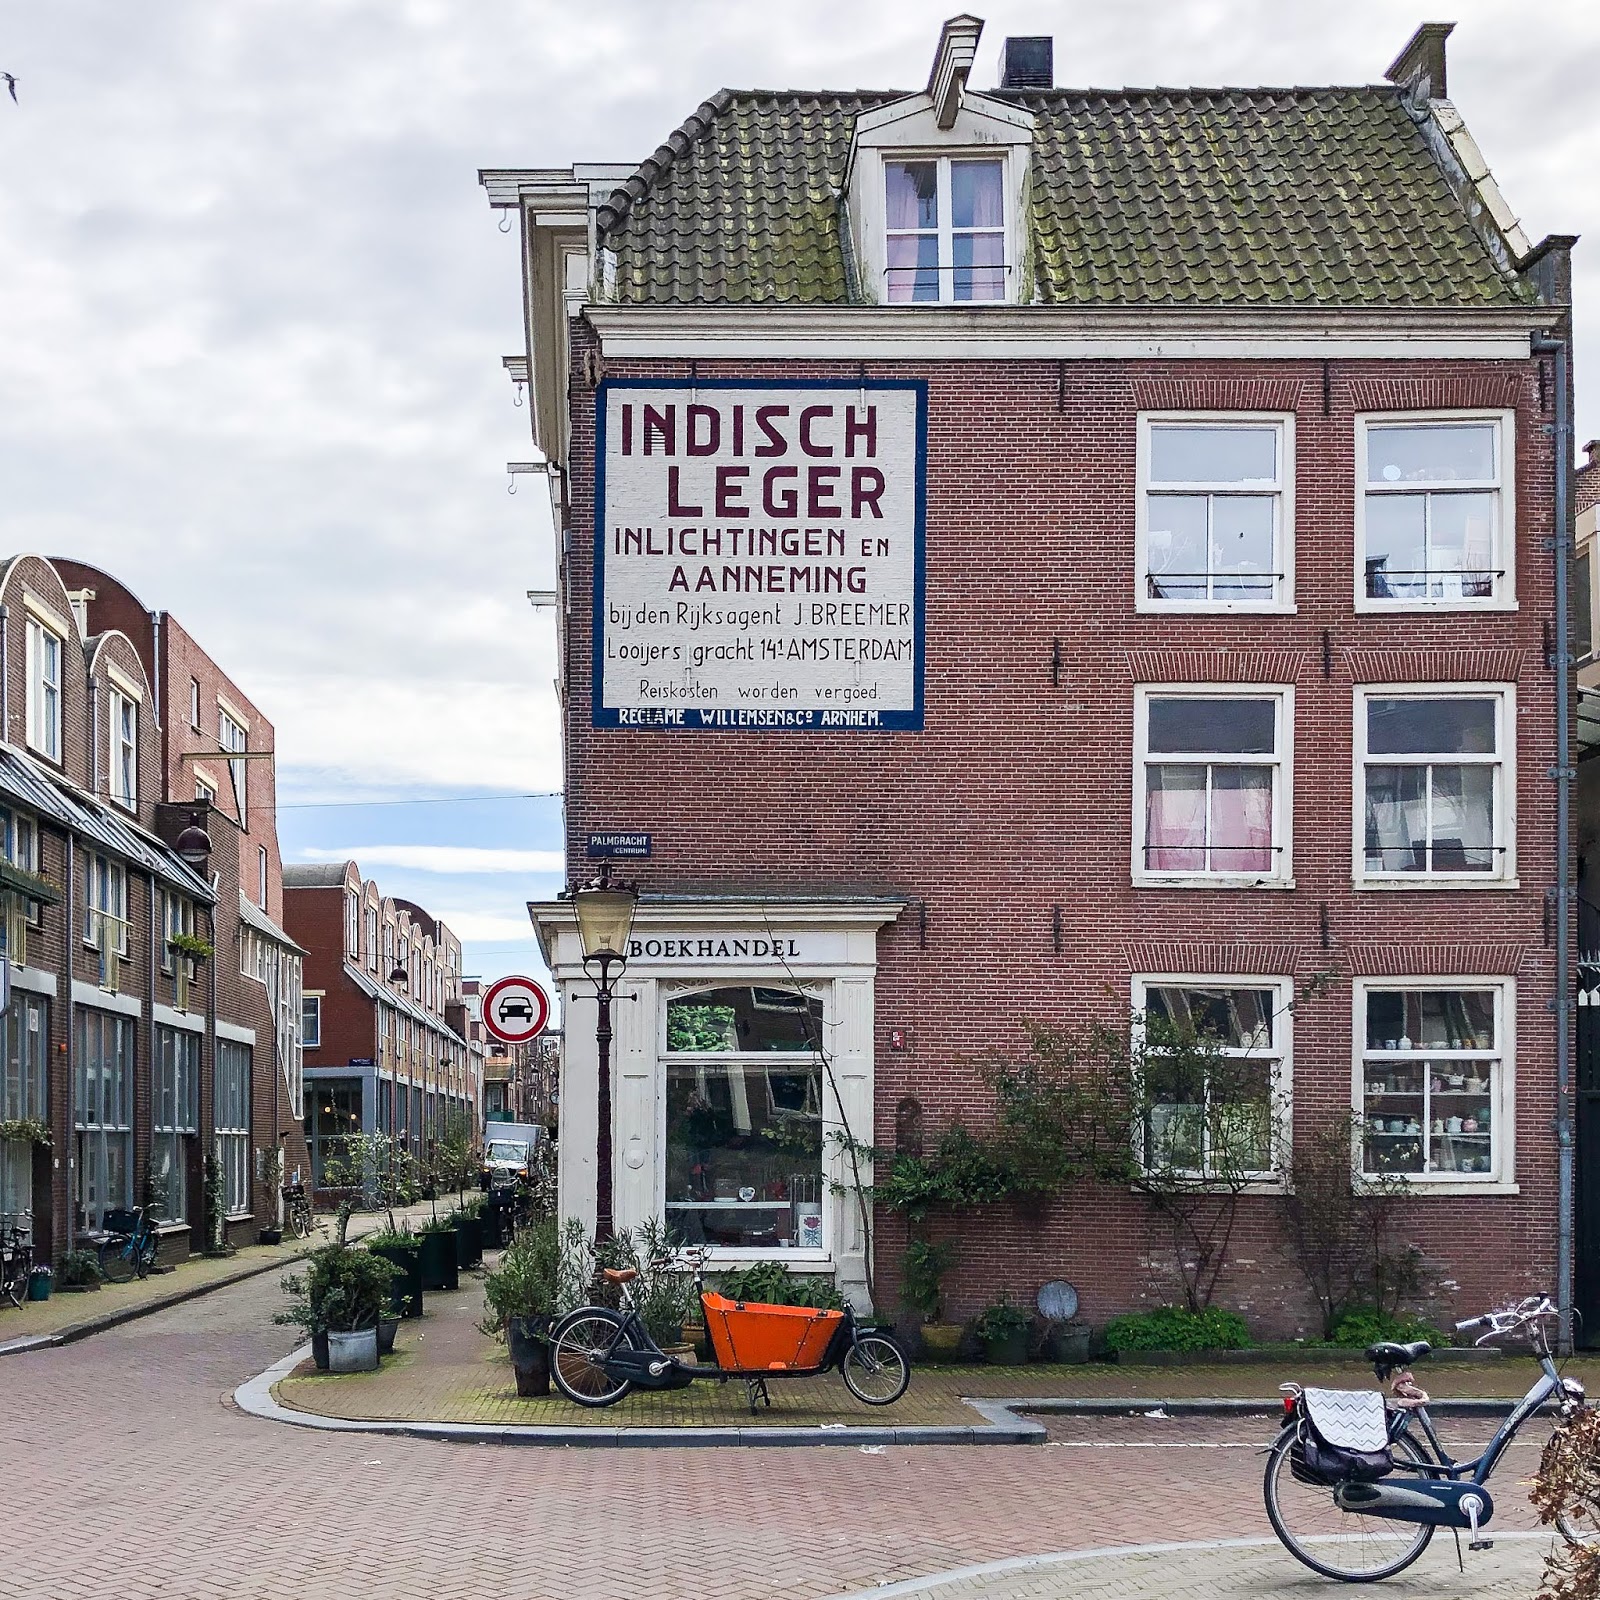 Gemaakt van Veranderlijk Hoofdstraat Stadssafari door Amsterdam: Streetart Frankey en ander opmerkelijkheden |  agreylady